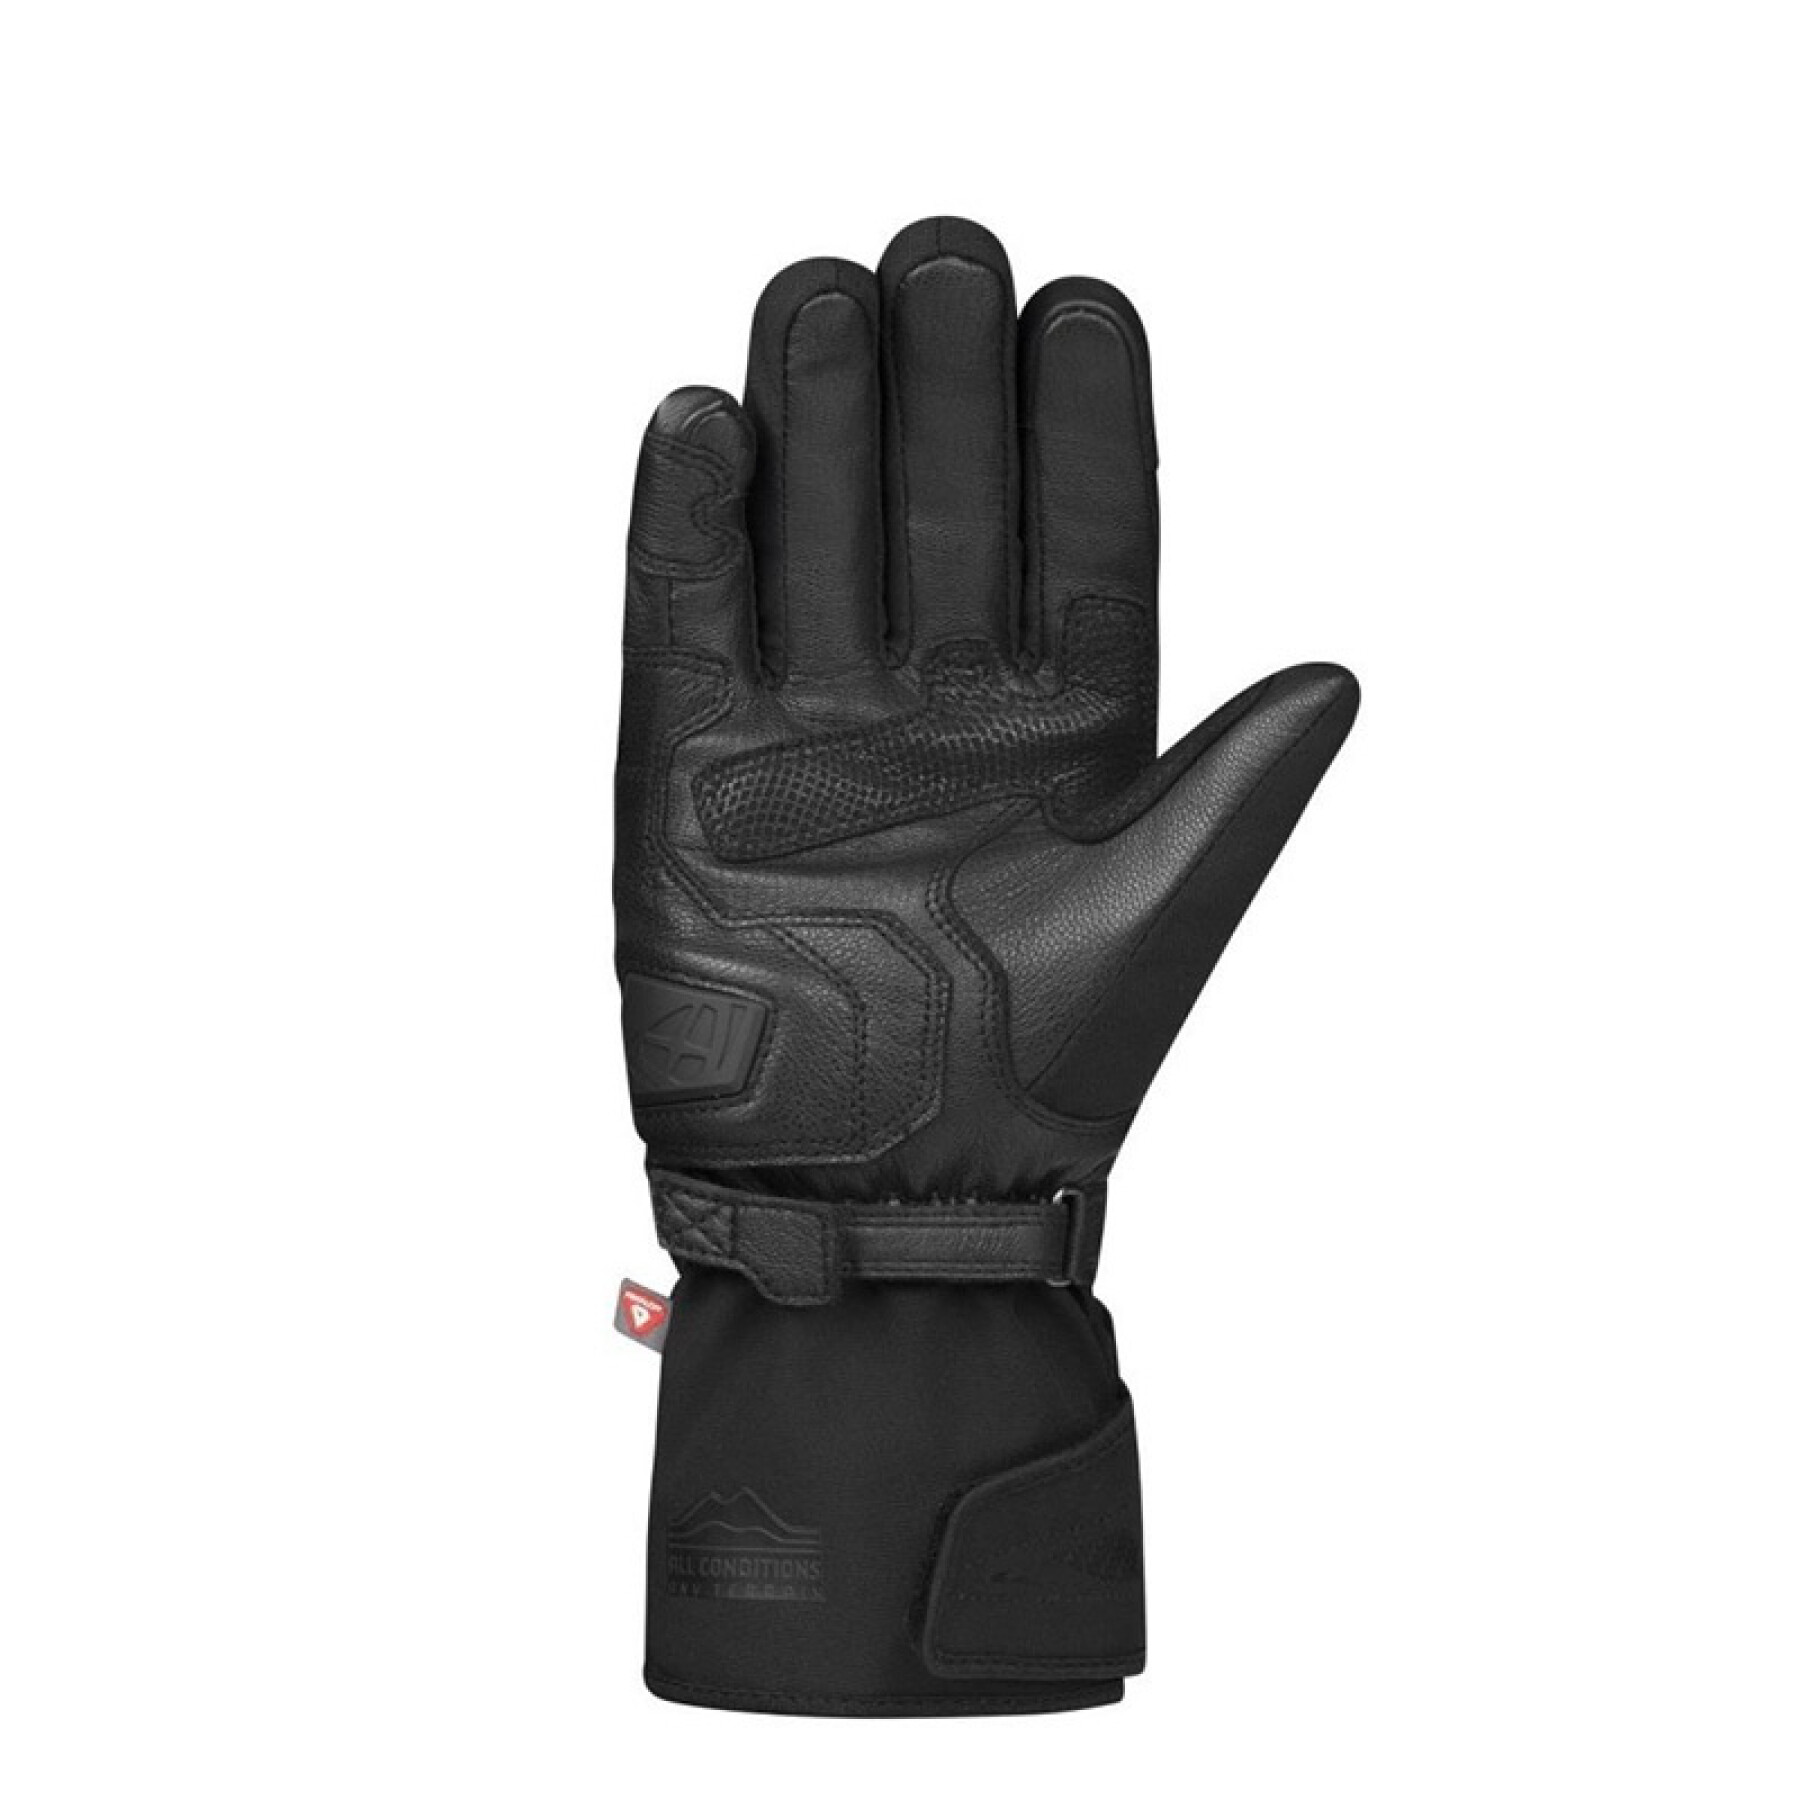 Women's winter motorcycle gloves Ixon Pro Rescue 3